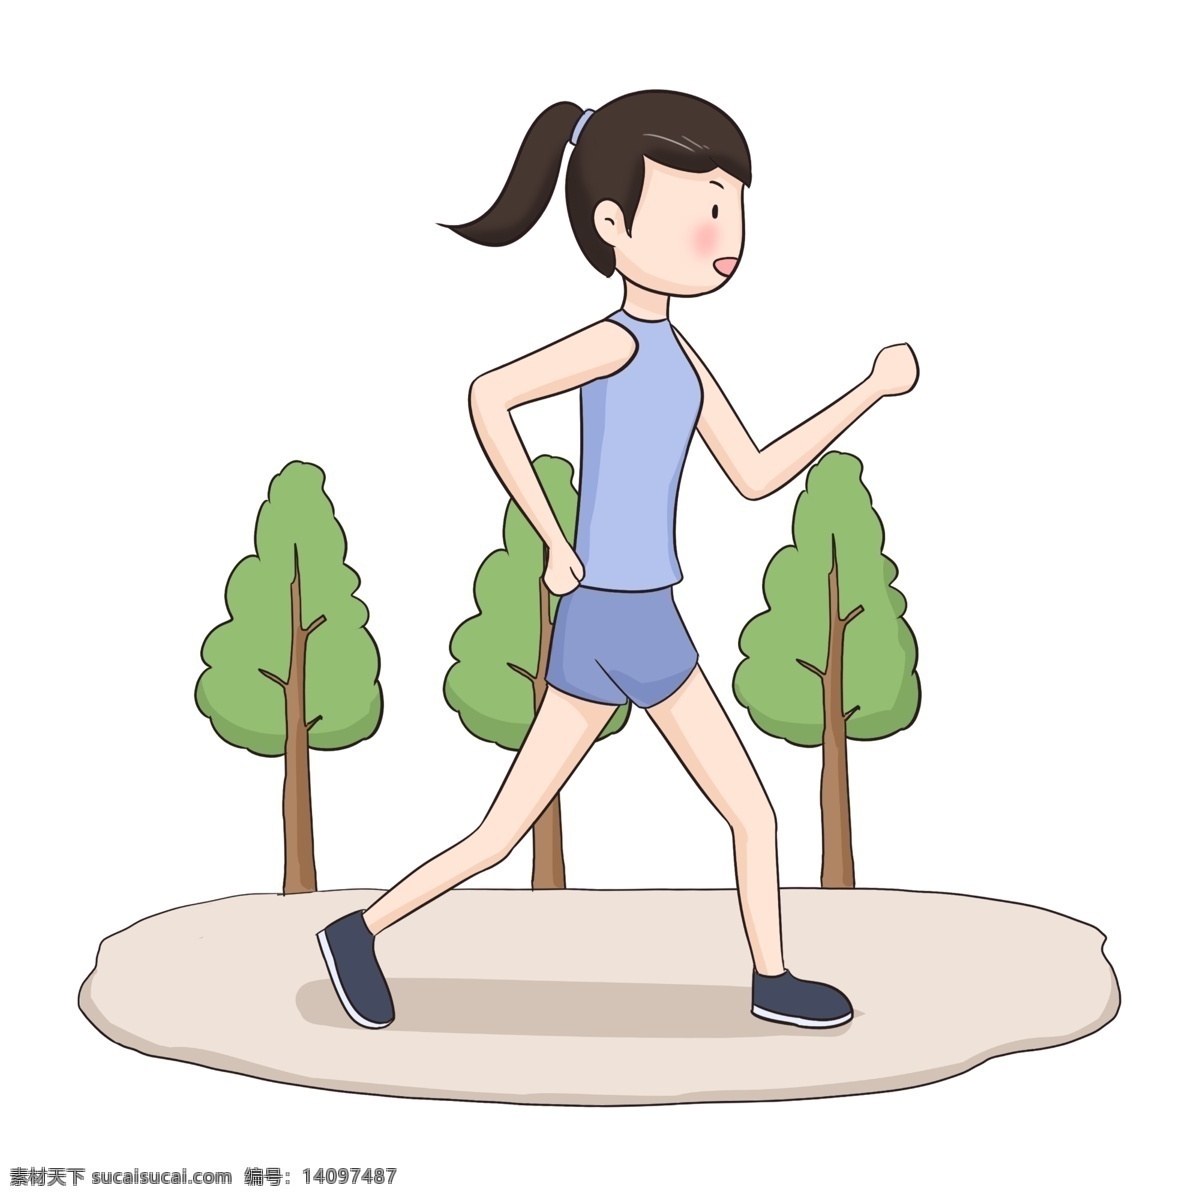 健身 运动 女孩 手绘 插画 扁平健身卡通 户外健身 运动卡通设计 健身大人 健身教练 扁平运动 春季运动 美体健身 跑步卡通 跑步女孩 运动健身 健身卡